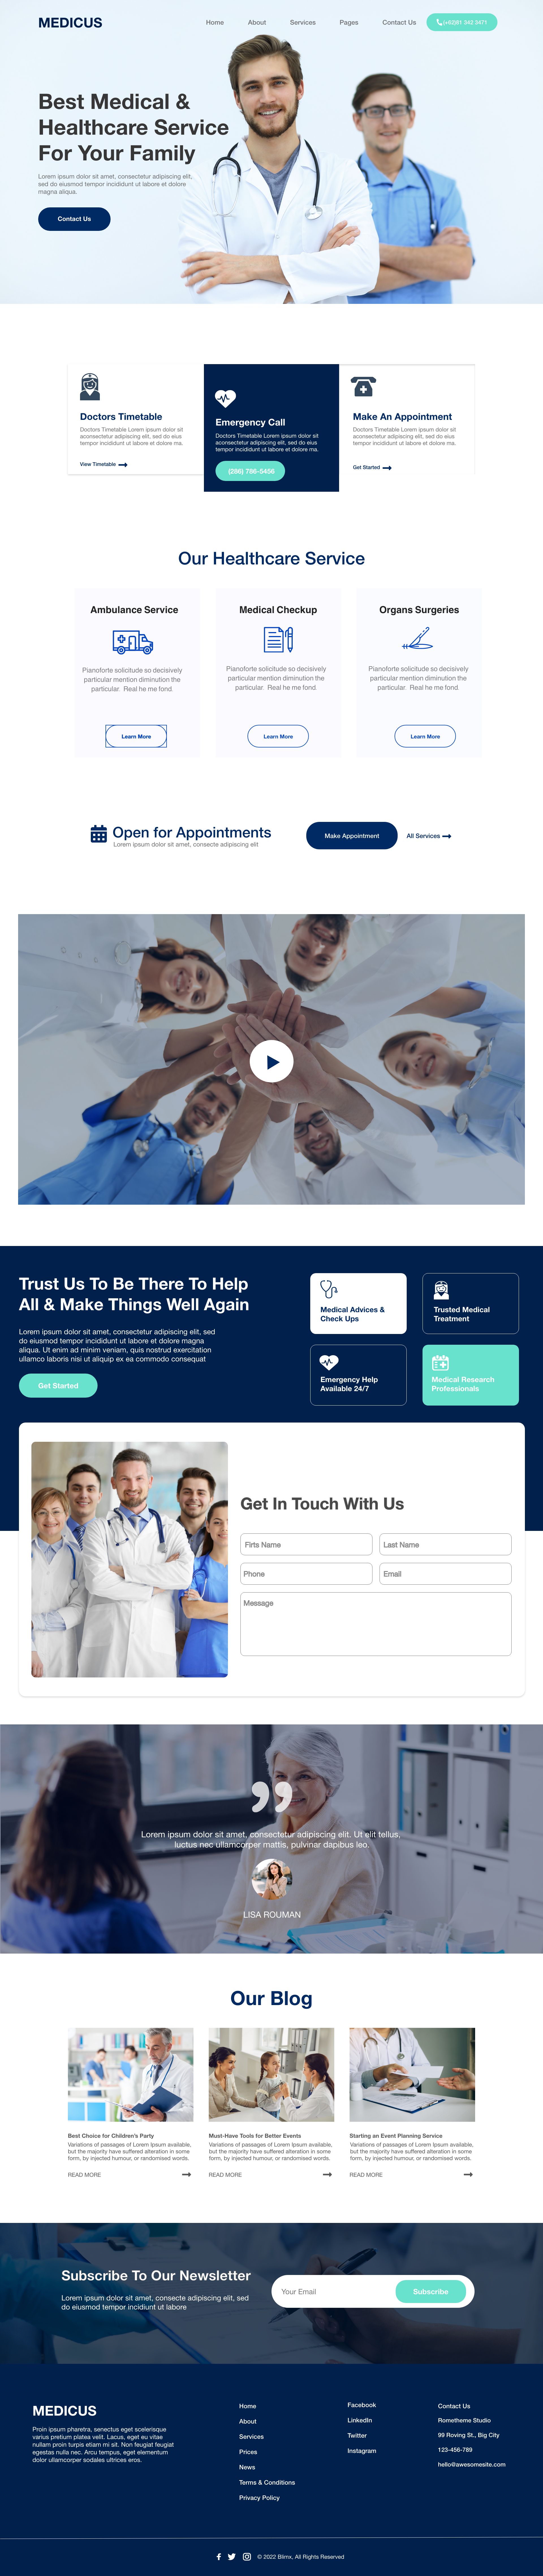 Medical Healthcare Website Design